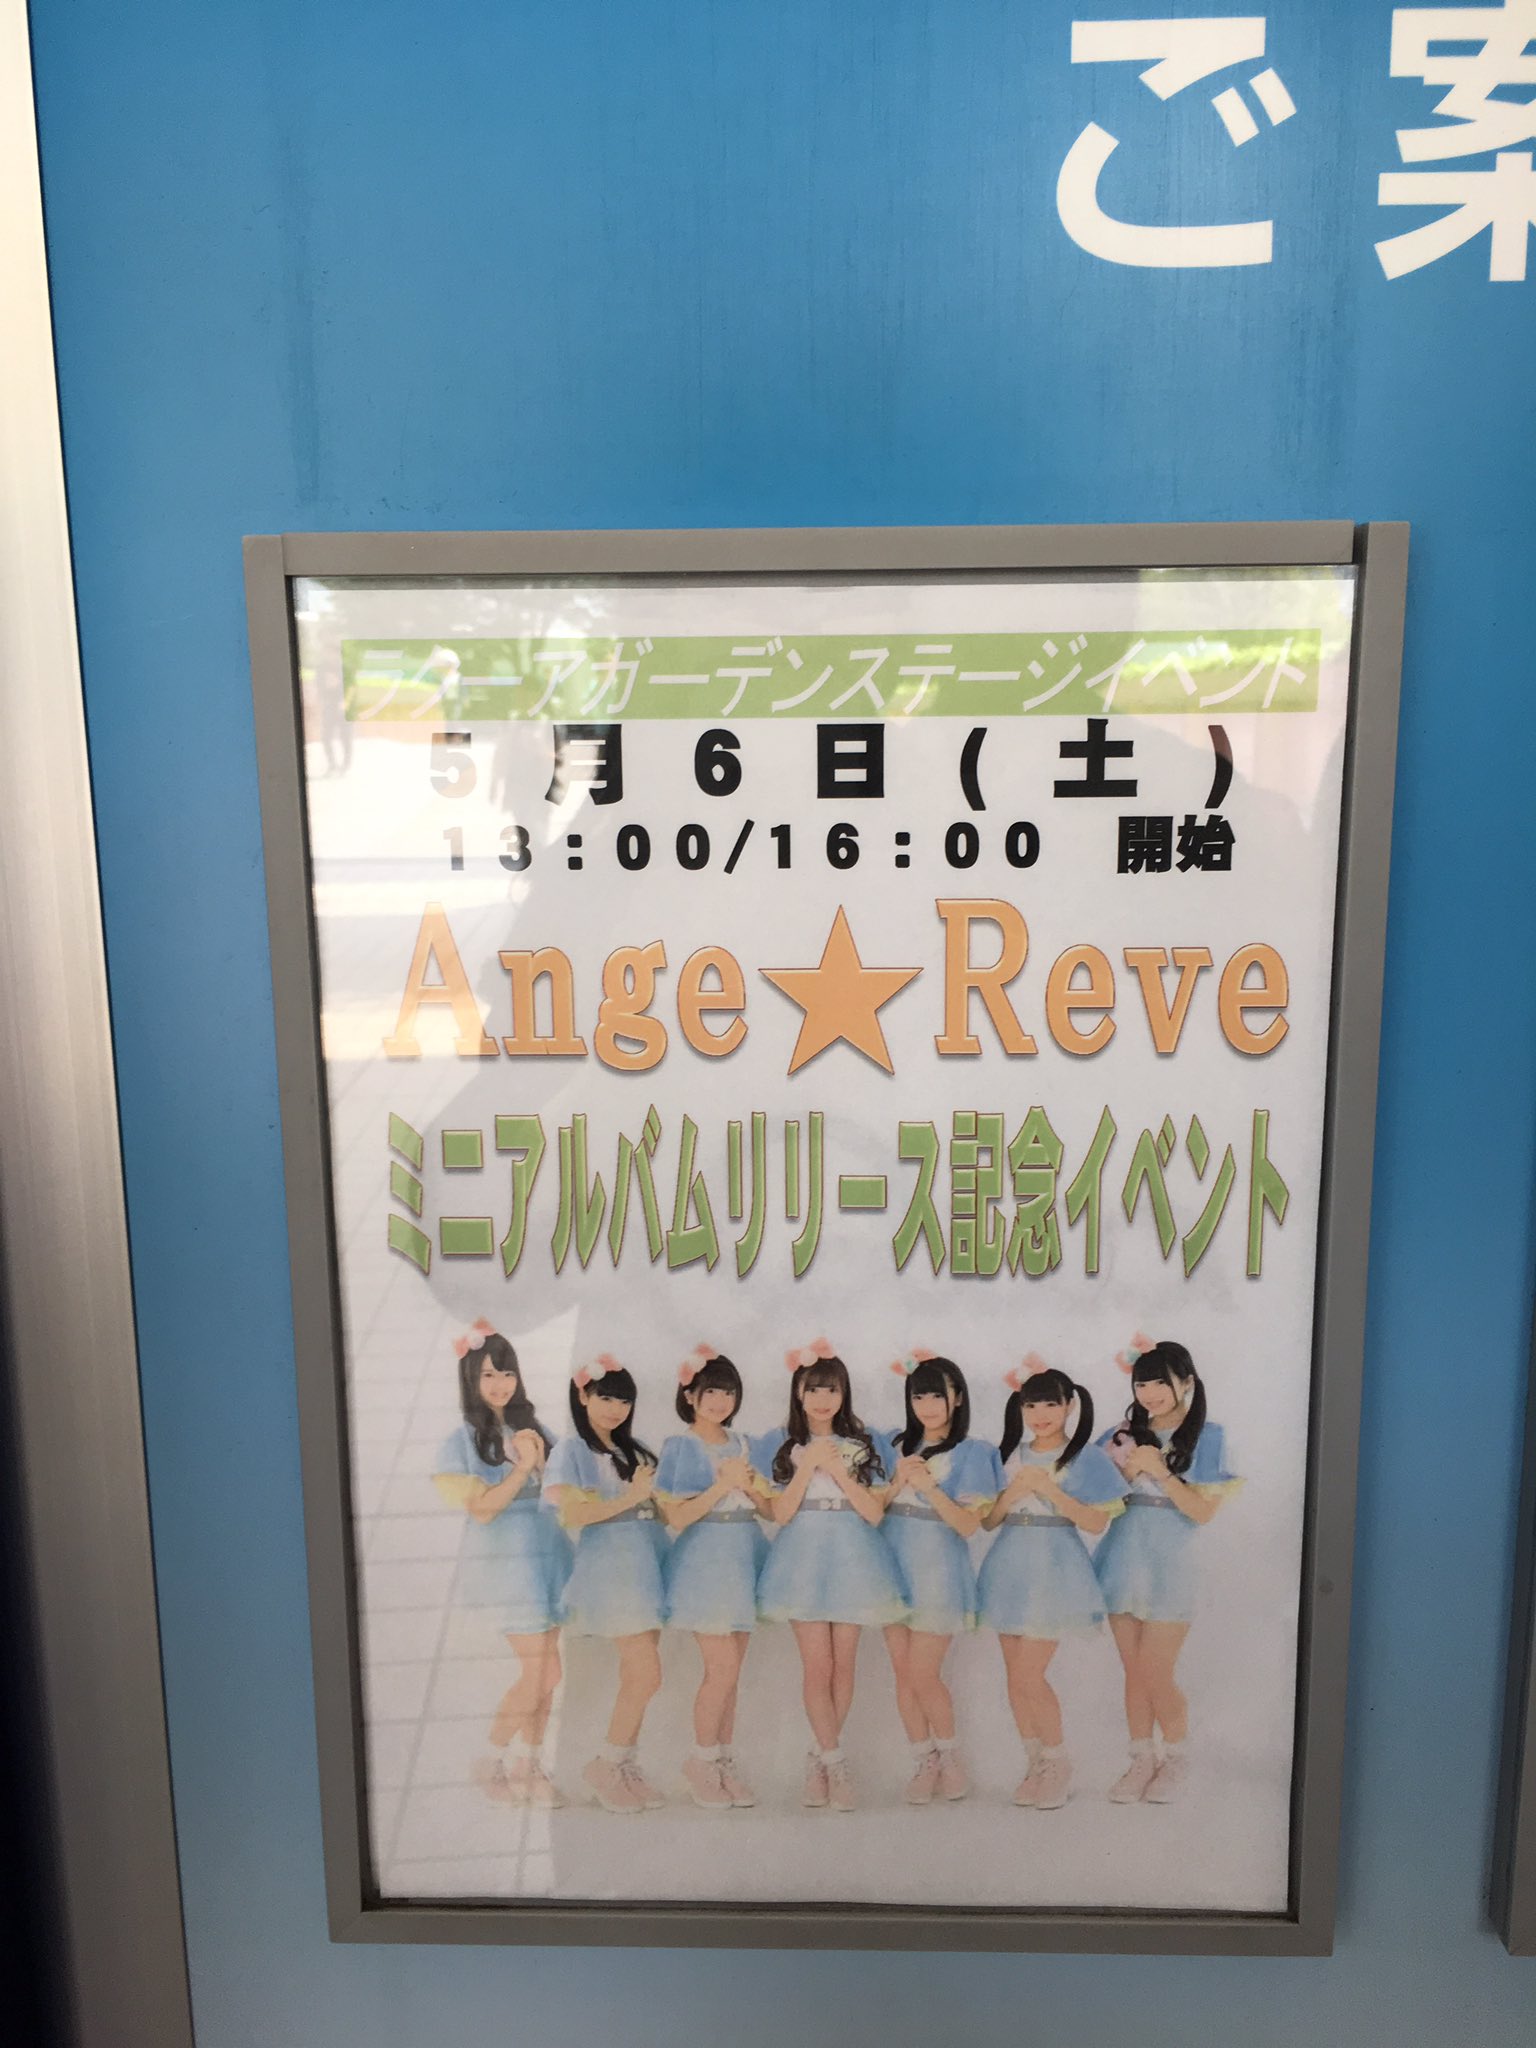 Yoshihashi Arisa : Ange Reve | 吉橋亜理砂 : Ange☆Reve